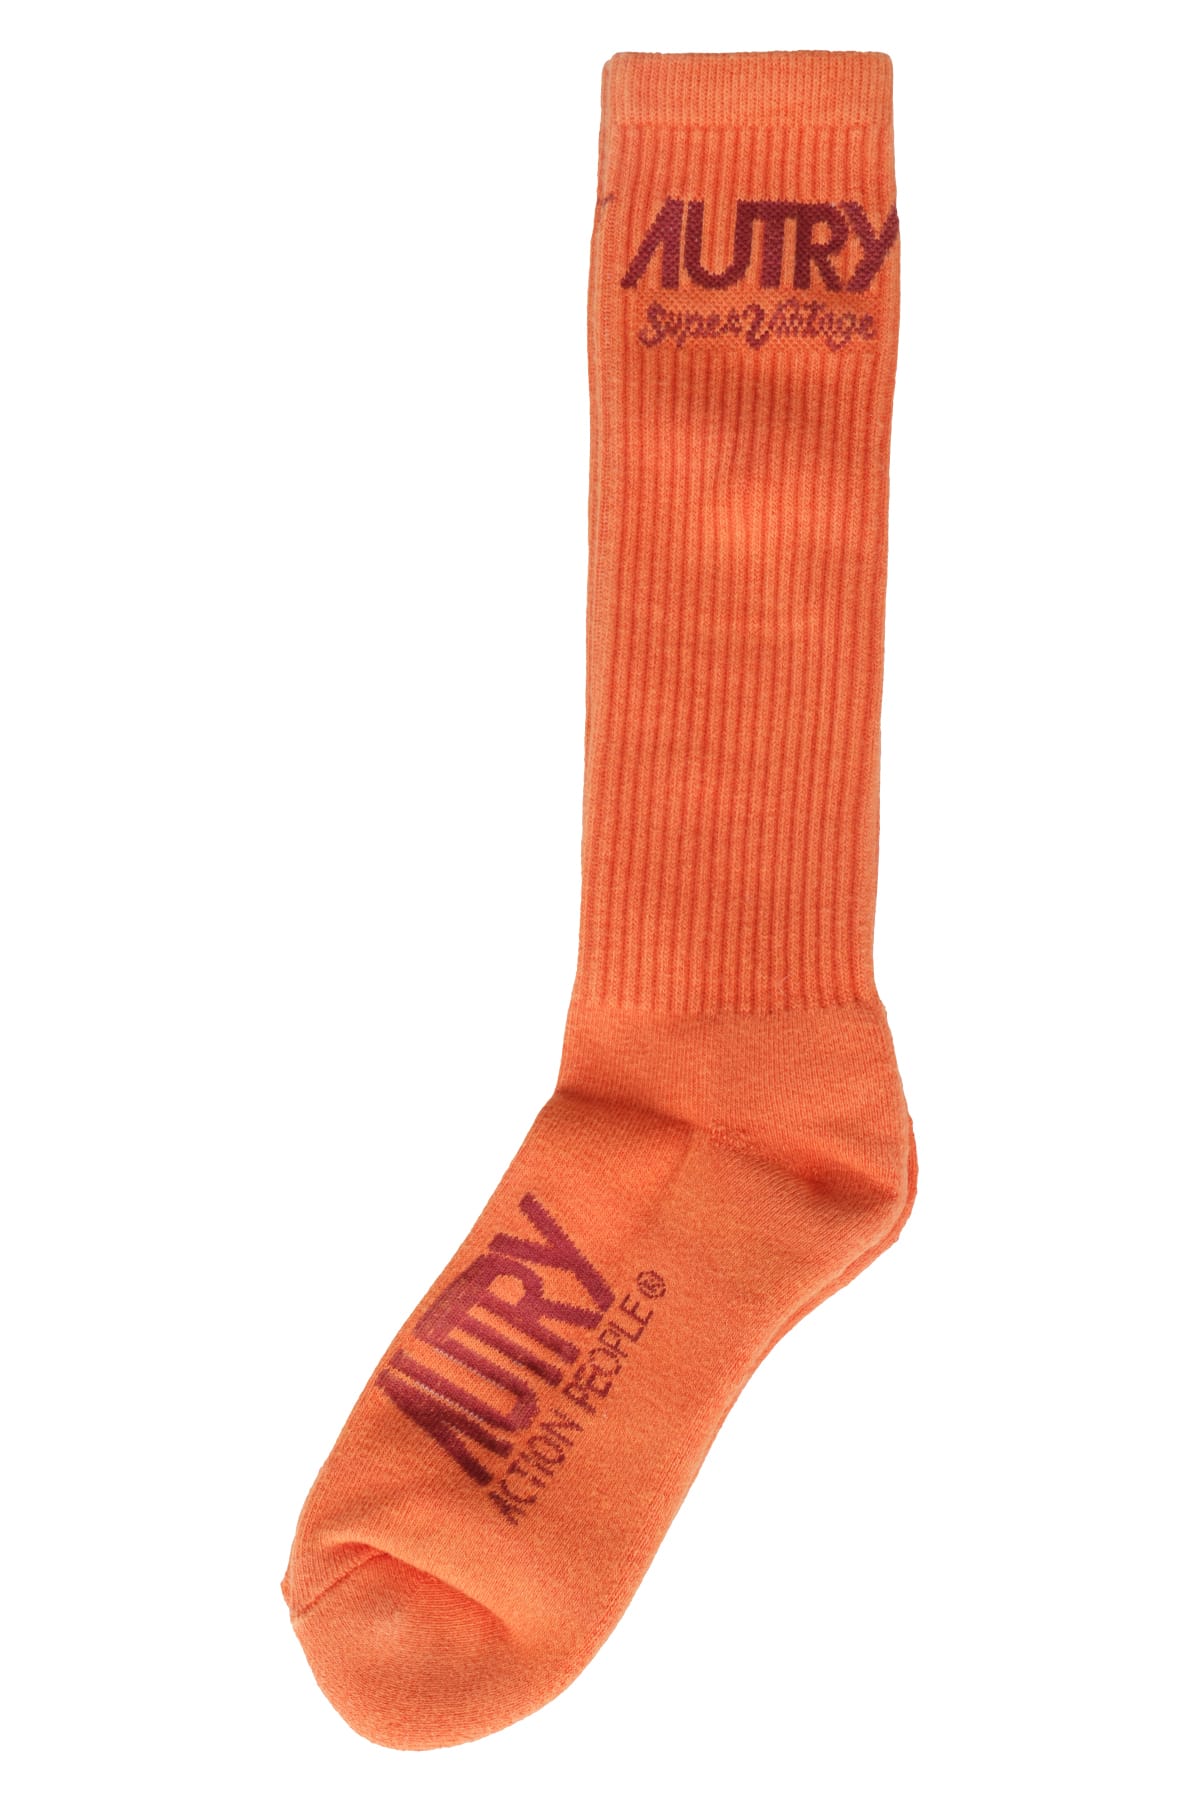 Shop Autry Socks Supervintage Unisex In Orange